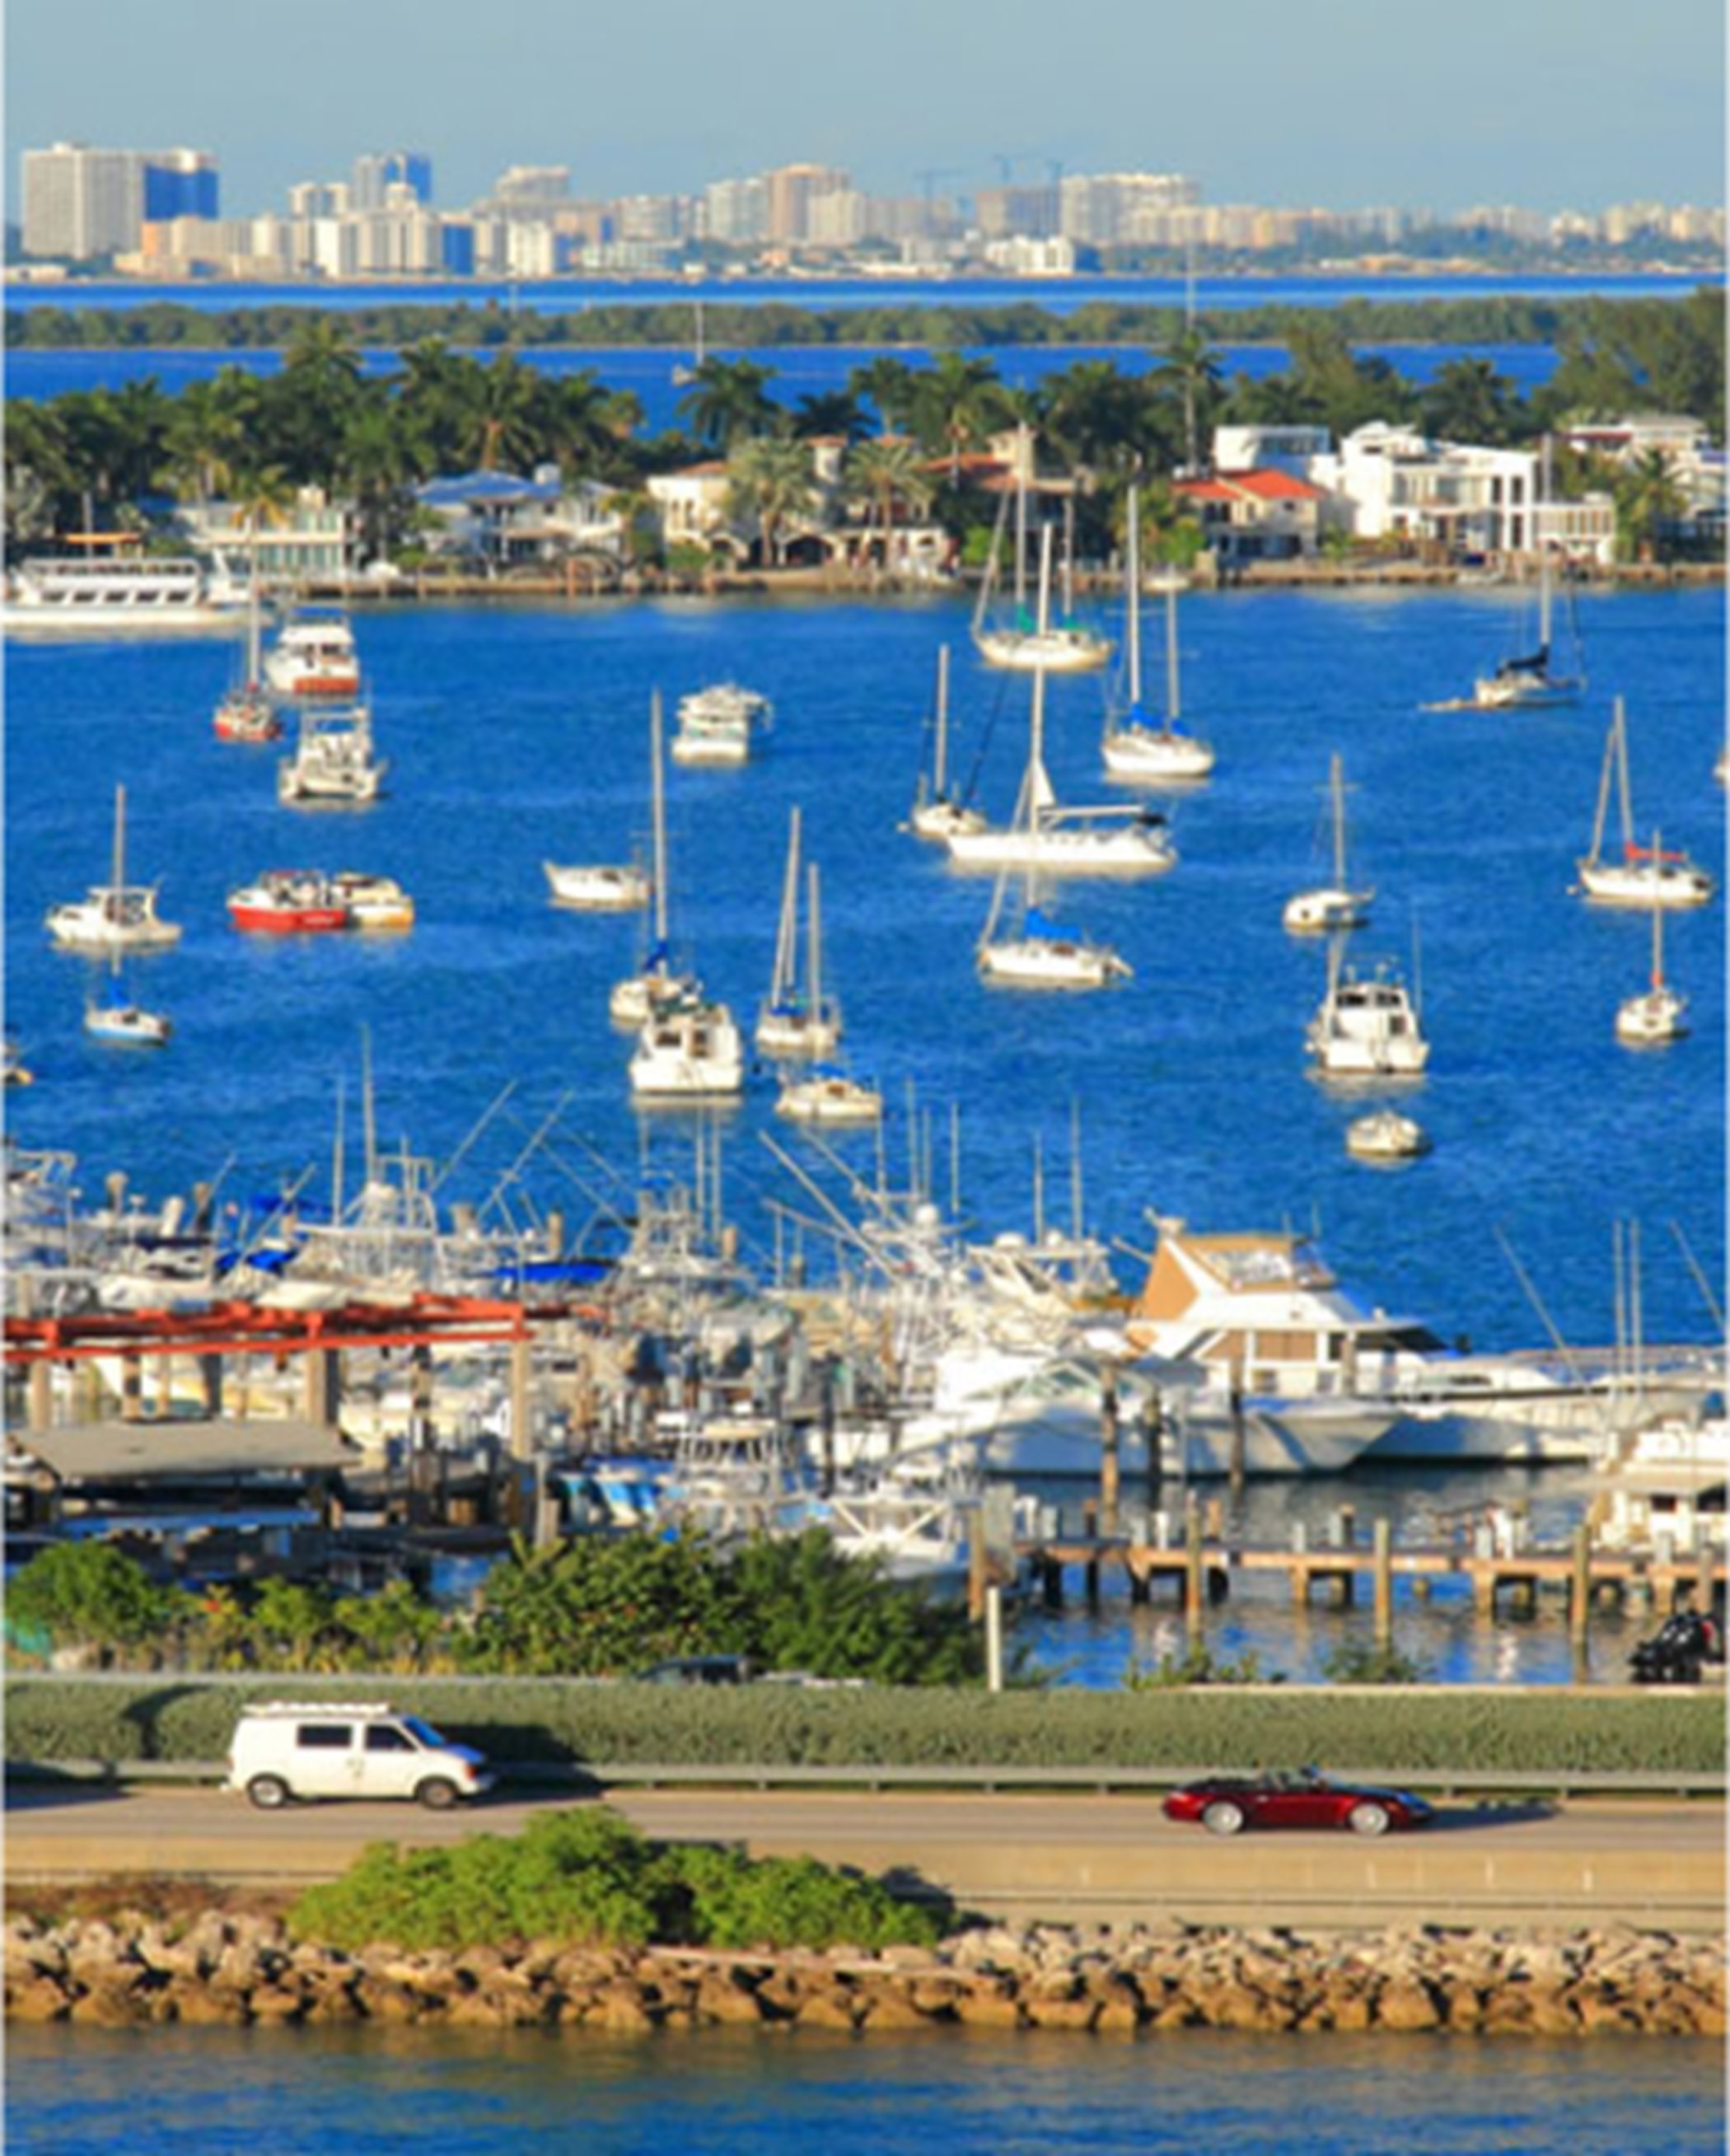 Miami Marina and Boats